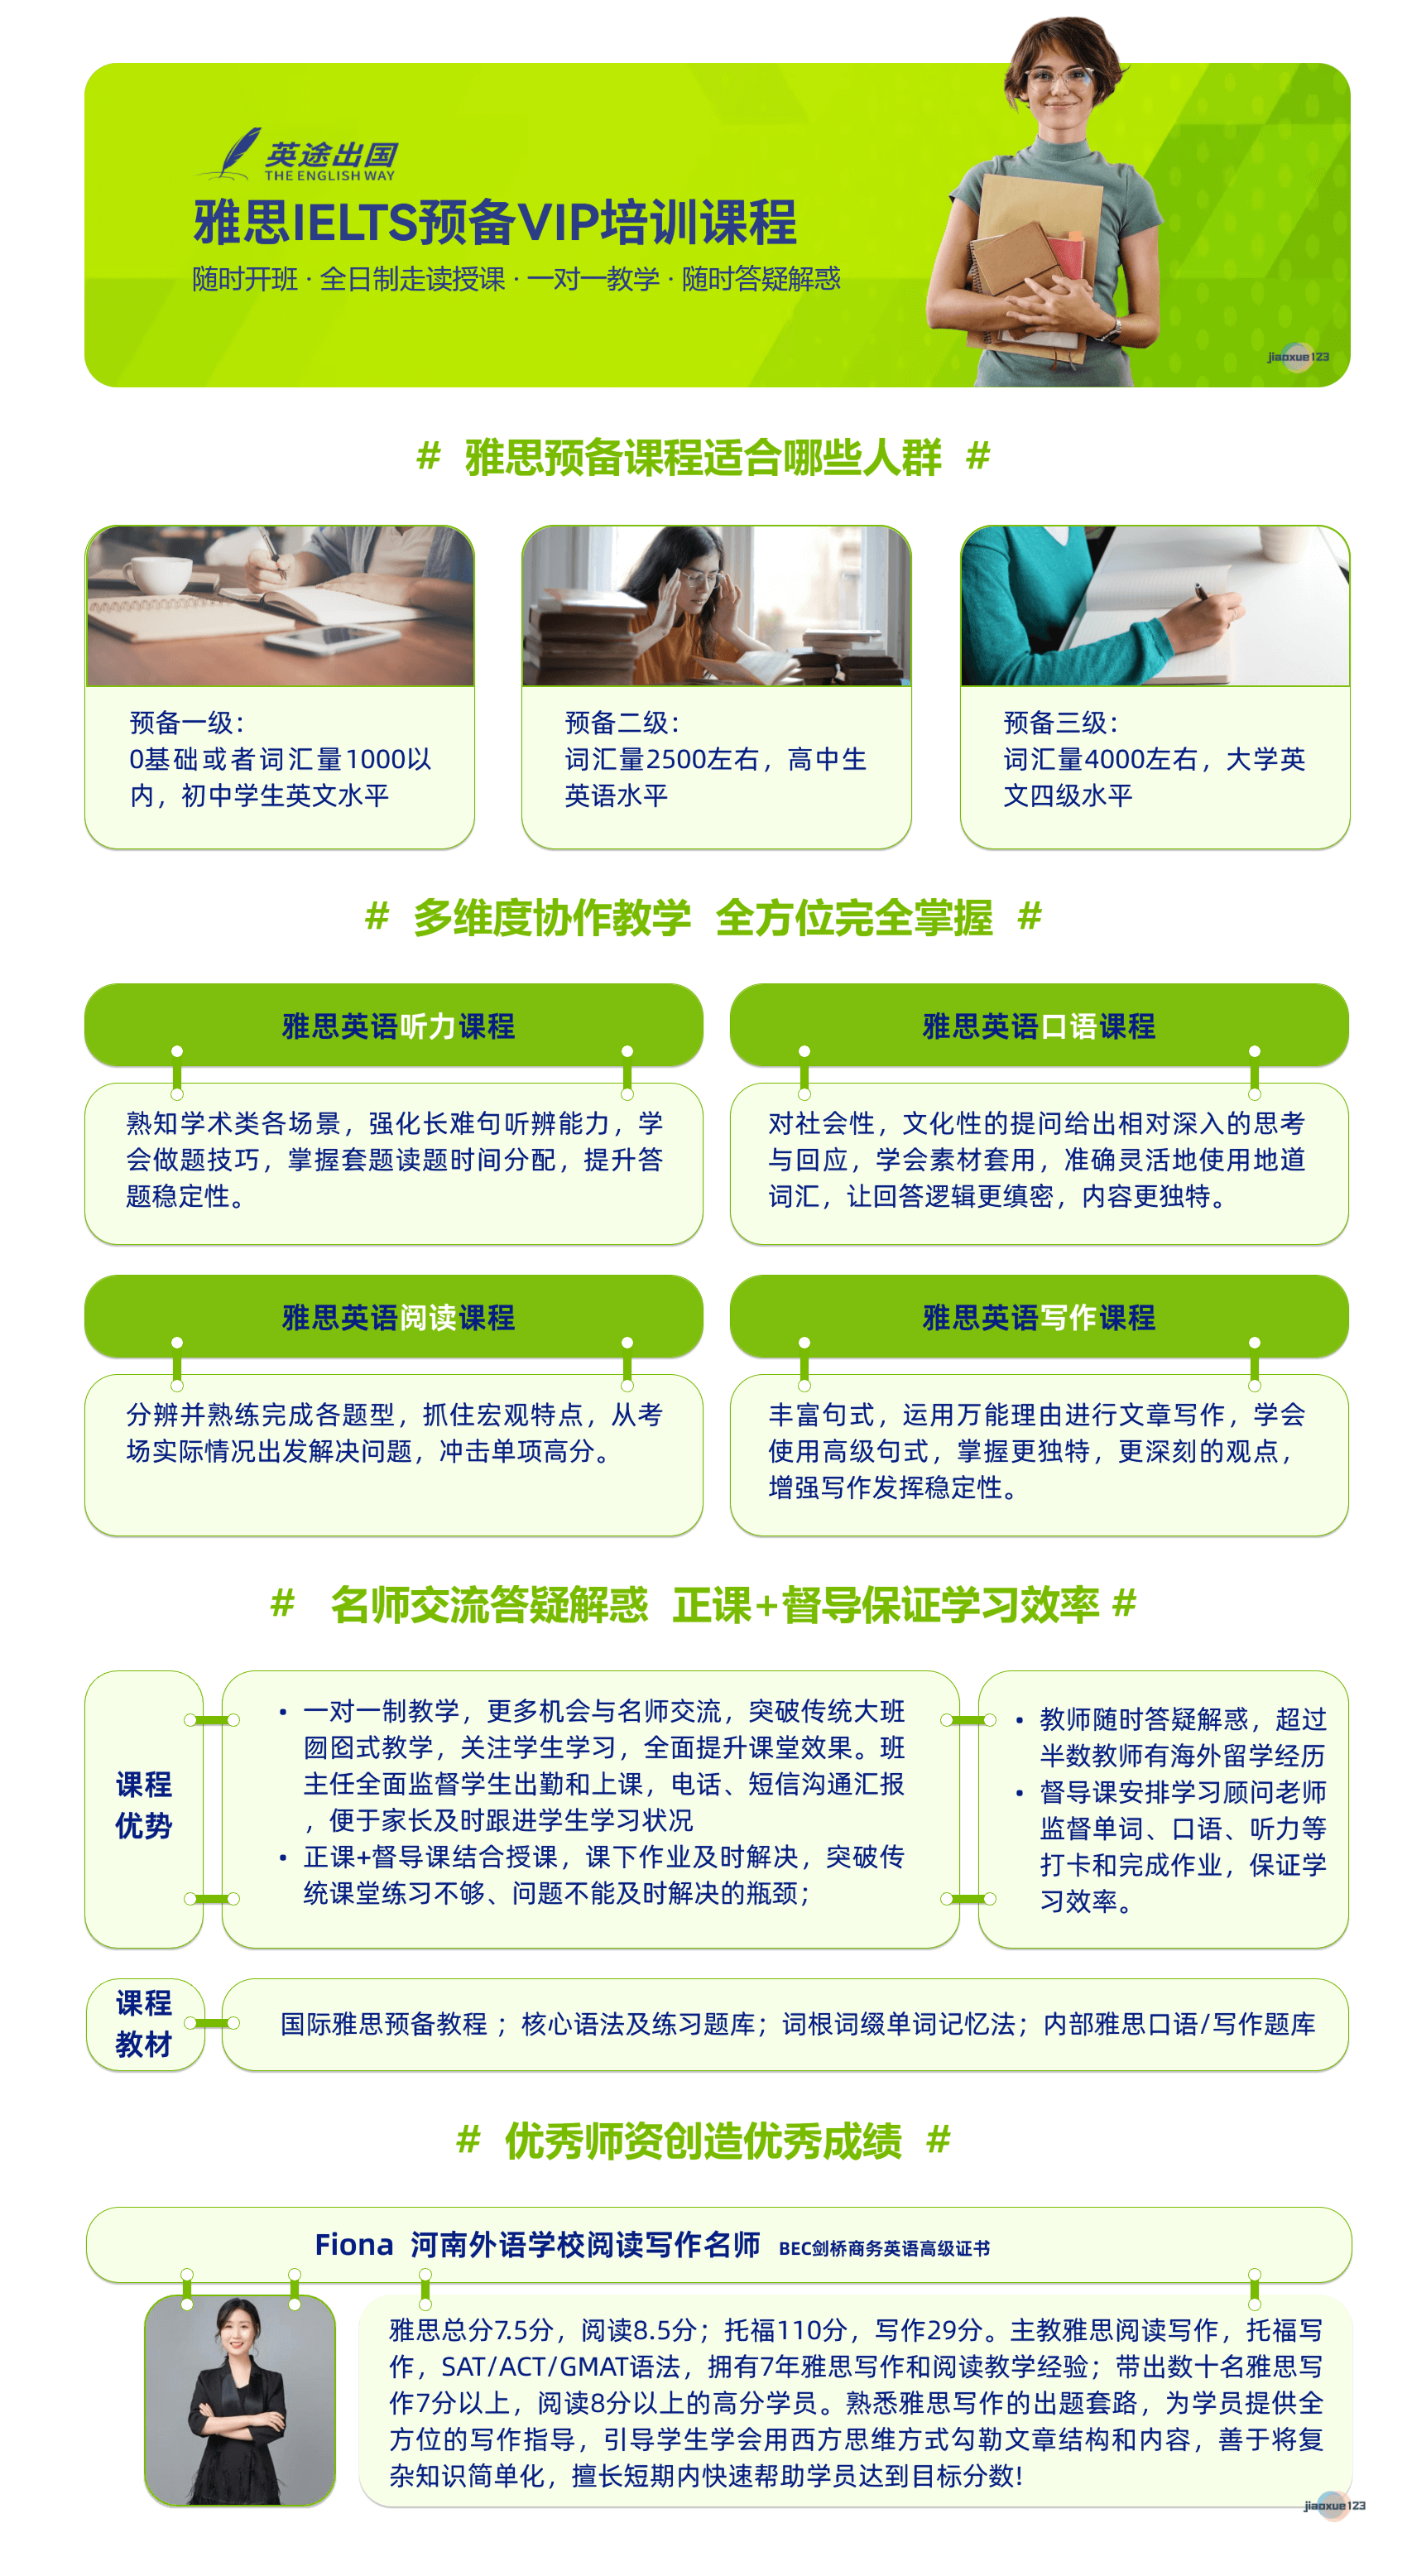 英途出国-郑州雅思IELTS预备VIP培训课程